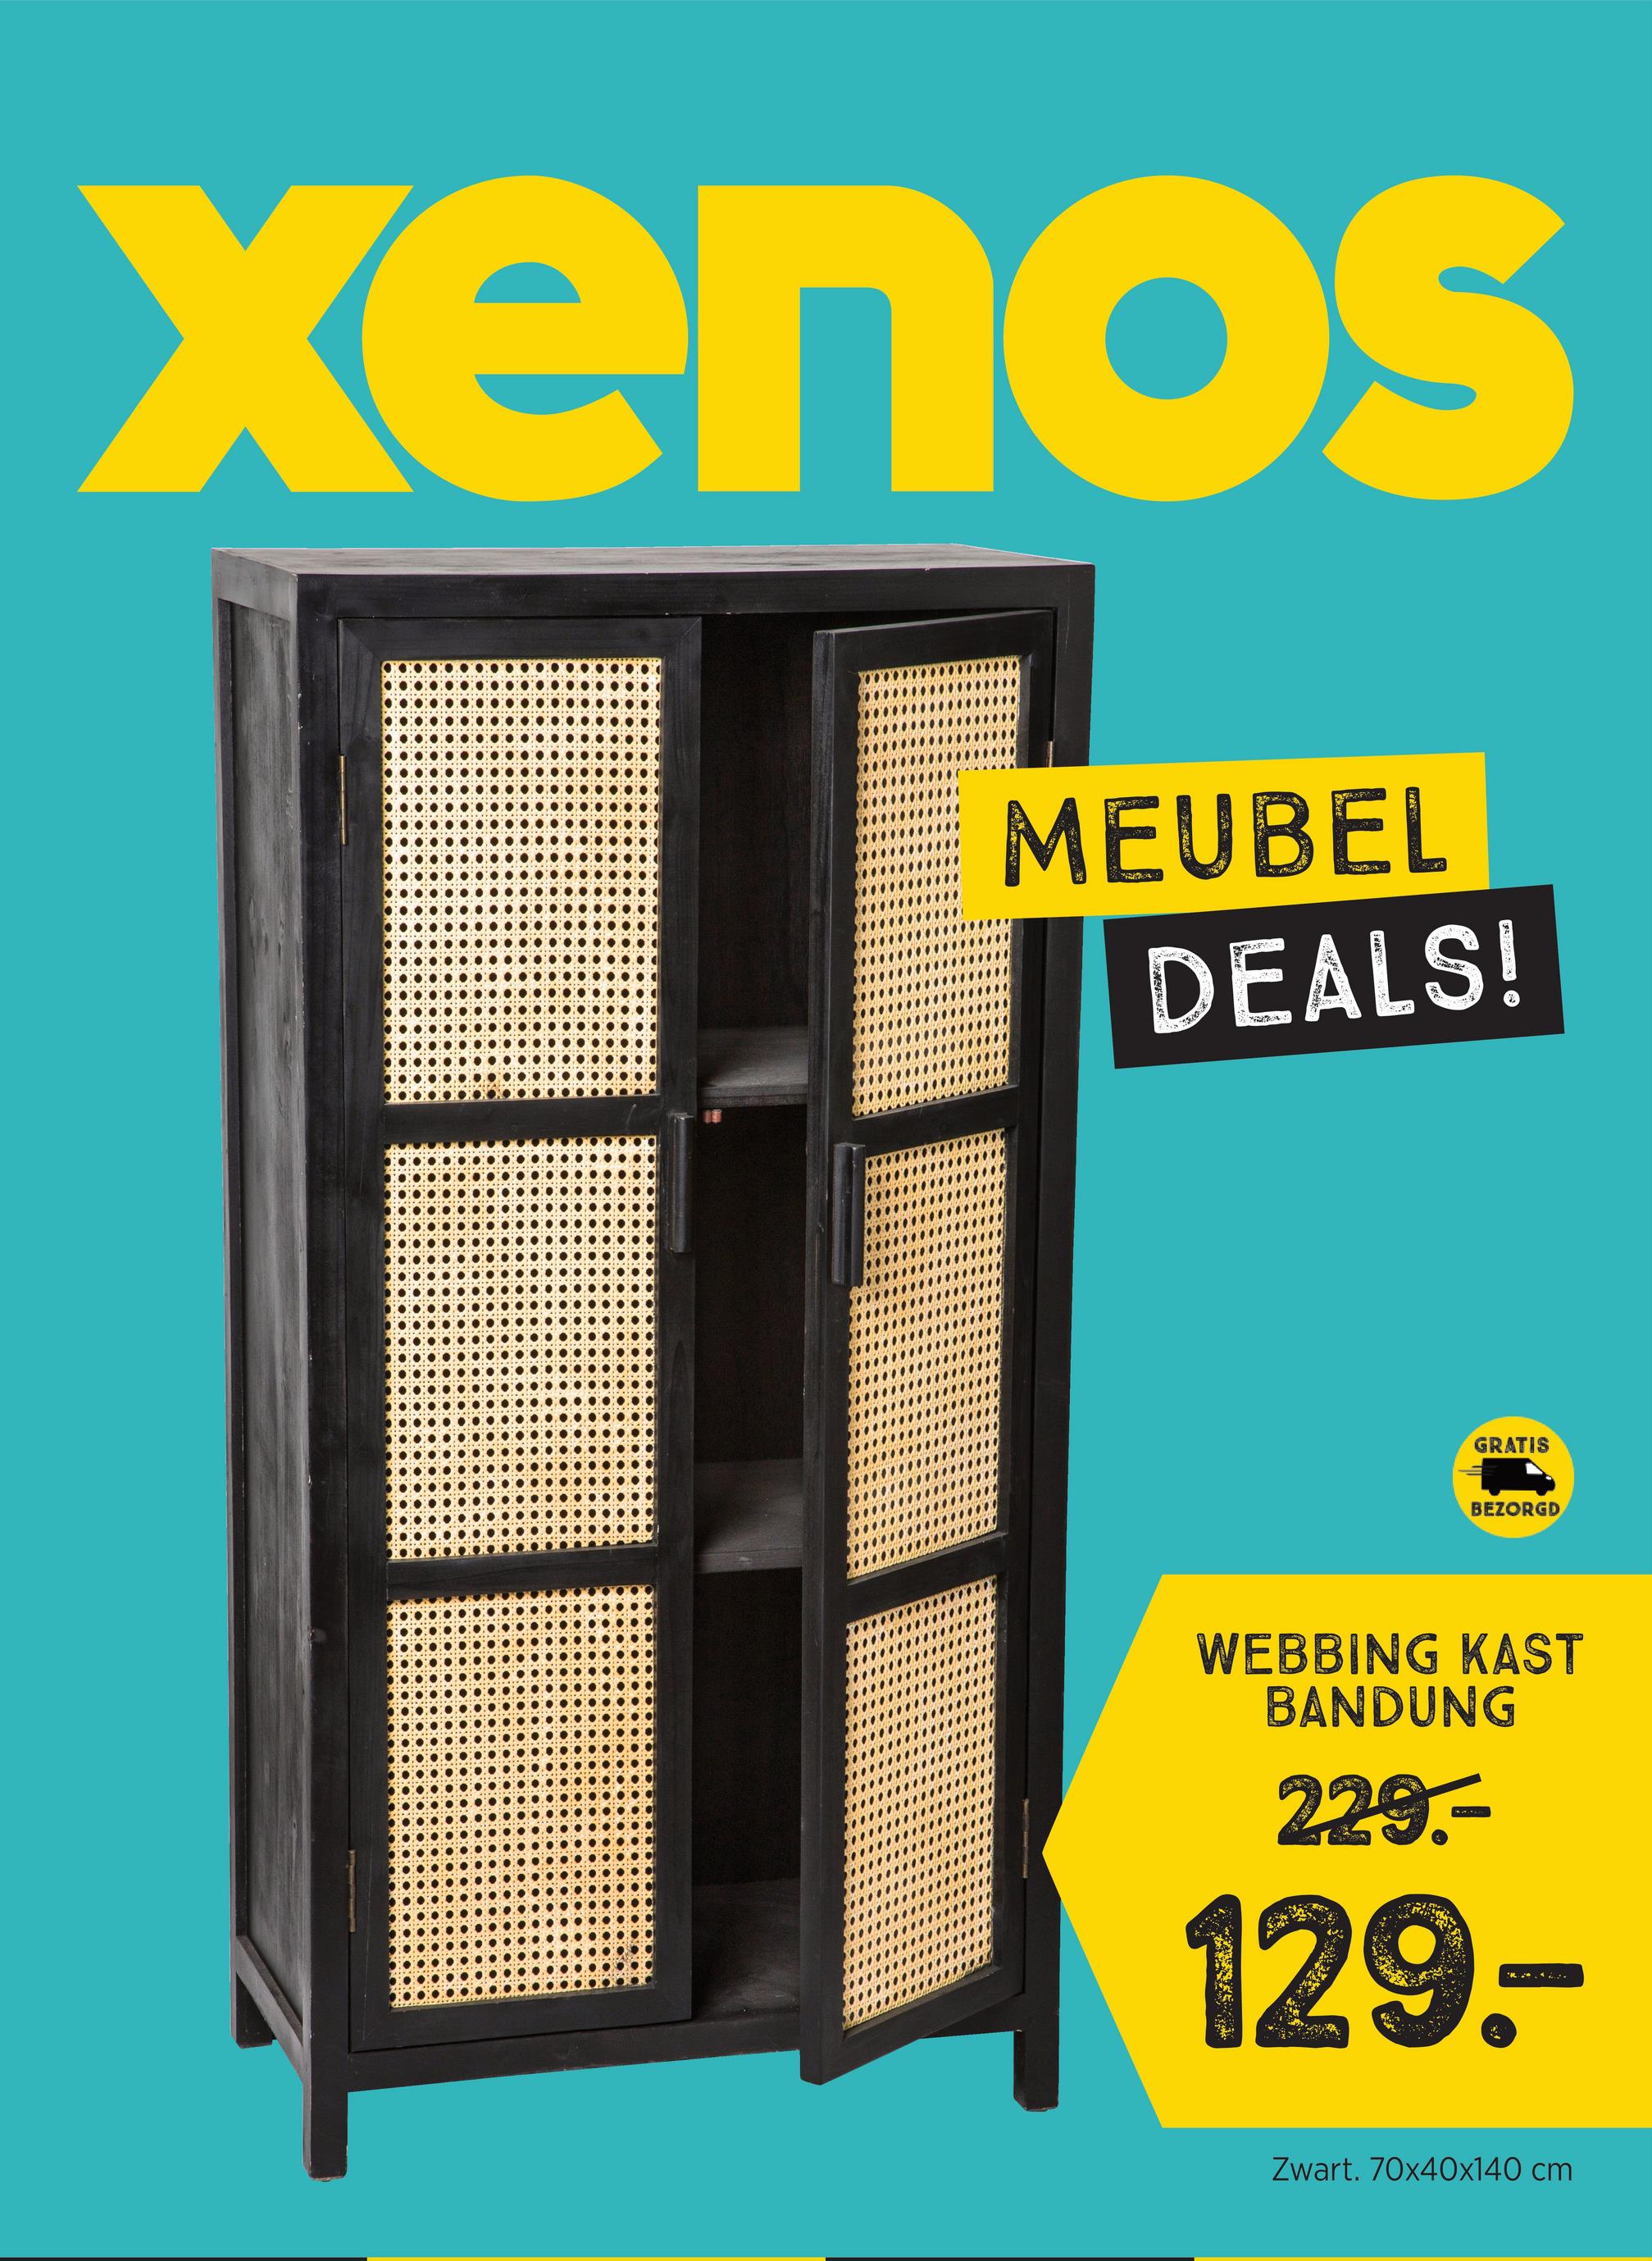 Xenos
MEUBEL
DEALS!
GRATIS
BEZORGD
WEBBING KAST
BANDUNG
229.-
129.
..
Zwart. 70x40x140 cm
